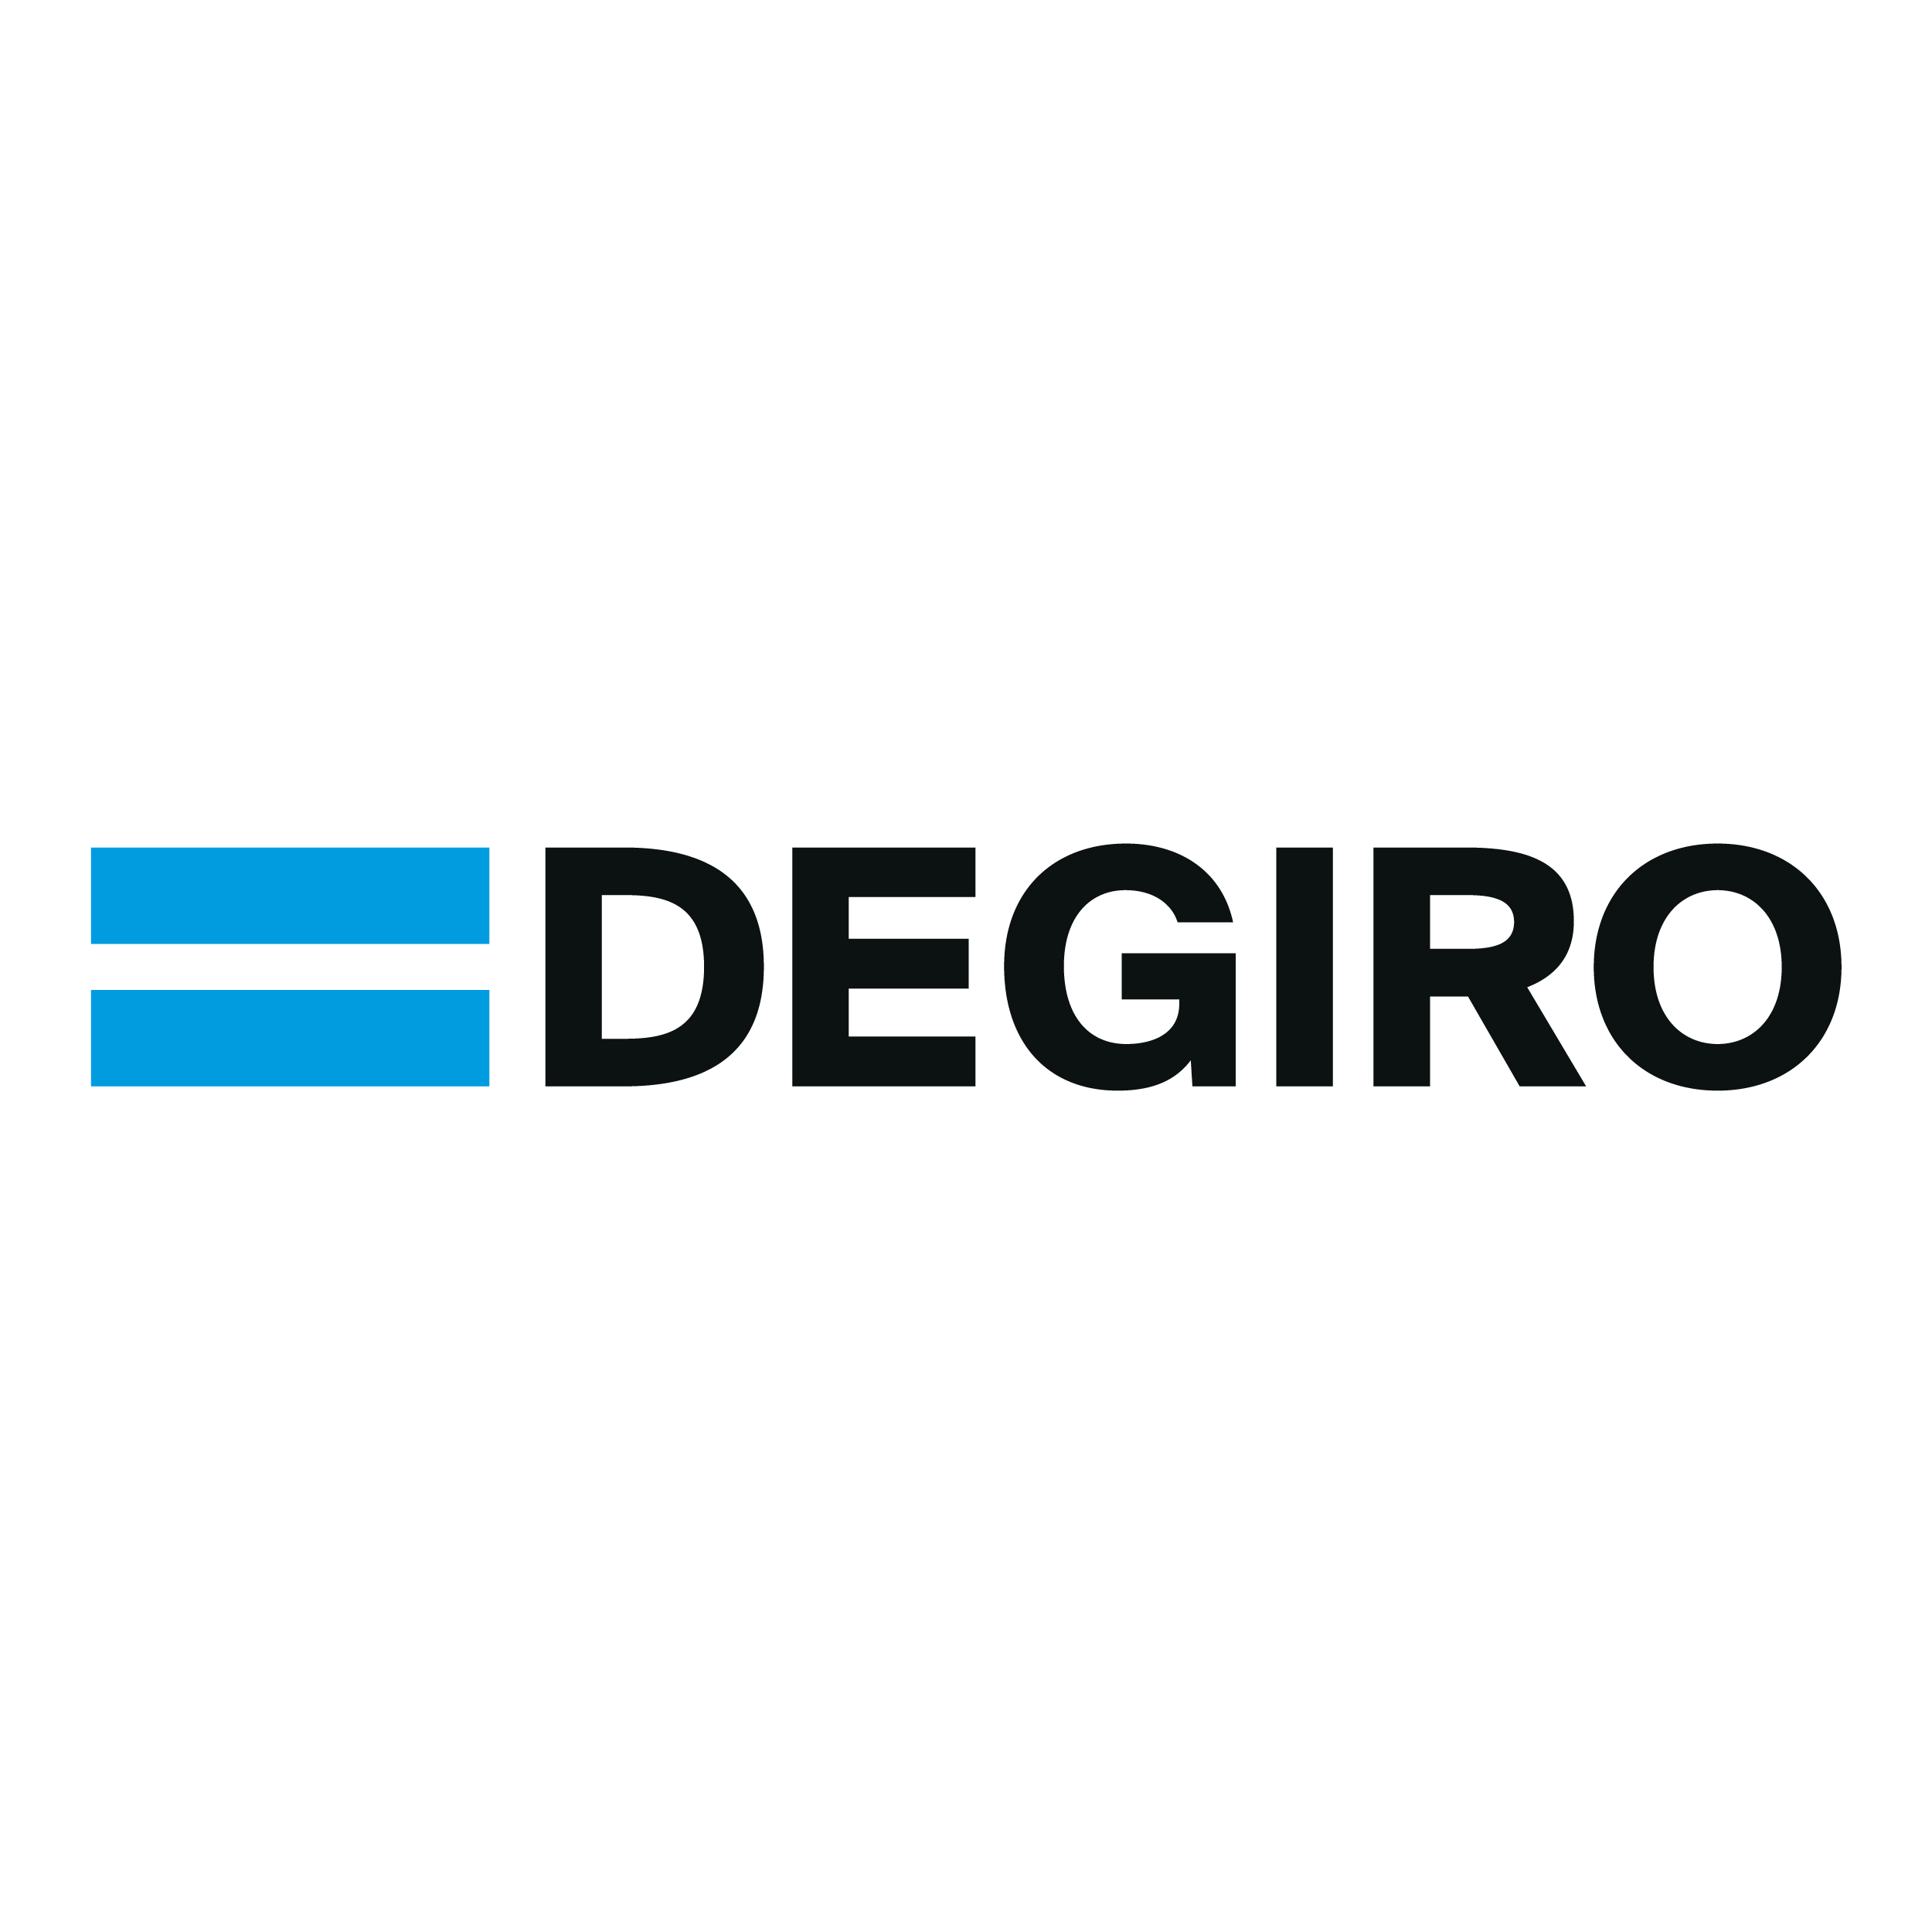 Därför letar DEGIRO alltid efter sätt att förbättra sin plattform samt produkt- och tjänsteerbjudandet. DEGIRO erbjuder nu handel på Tradegate.